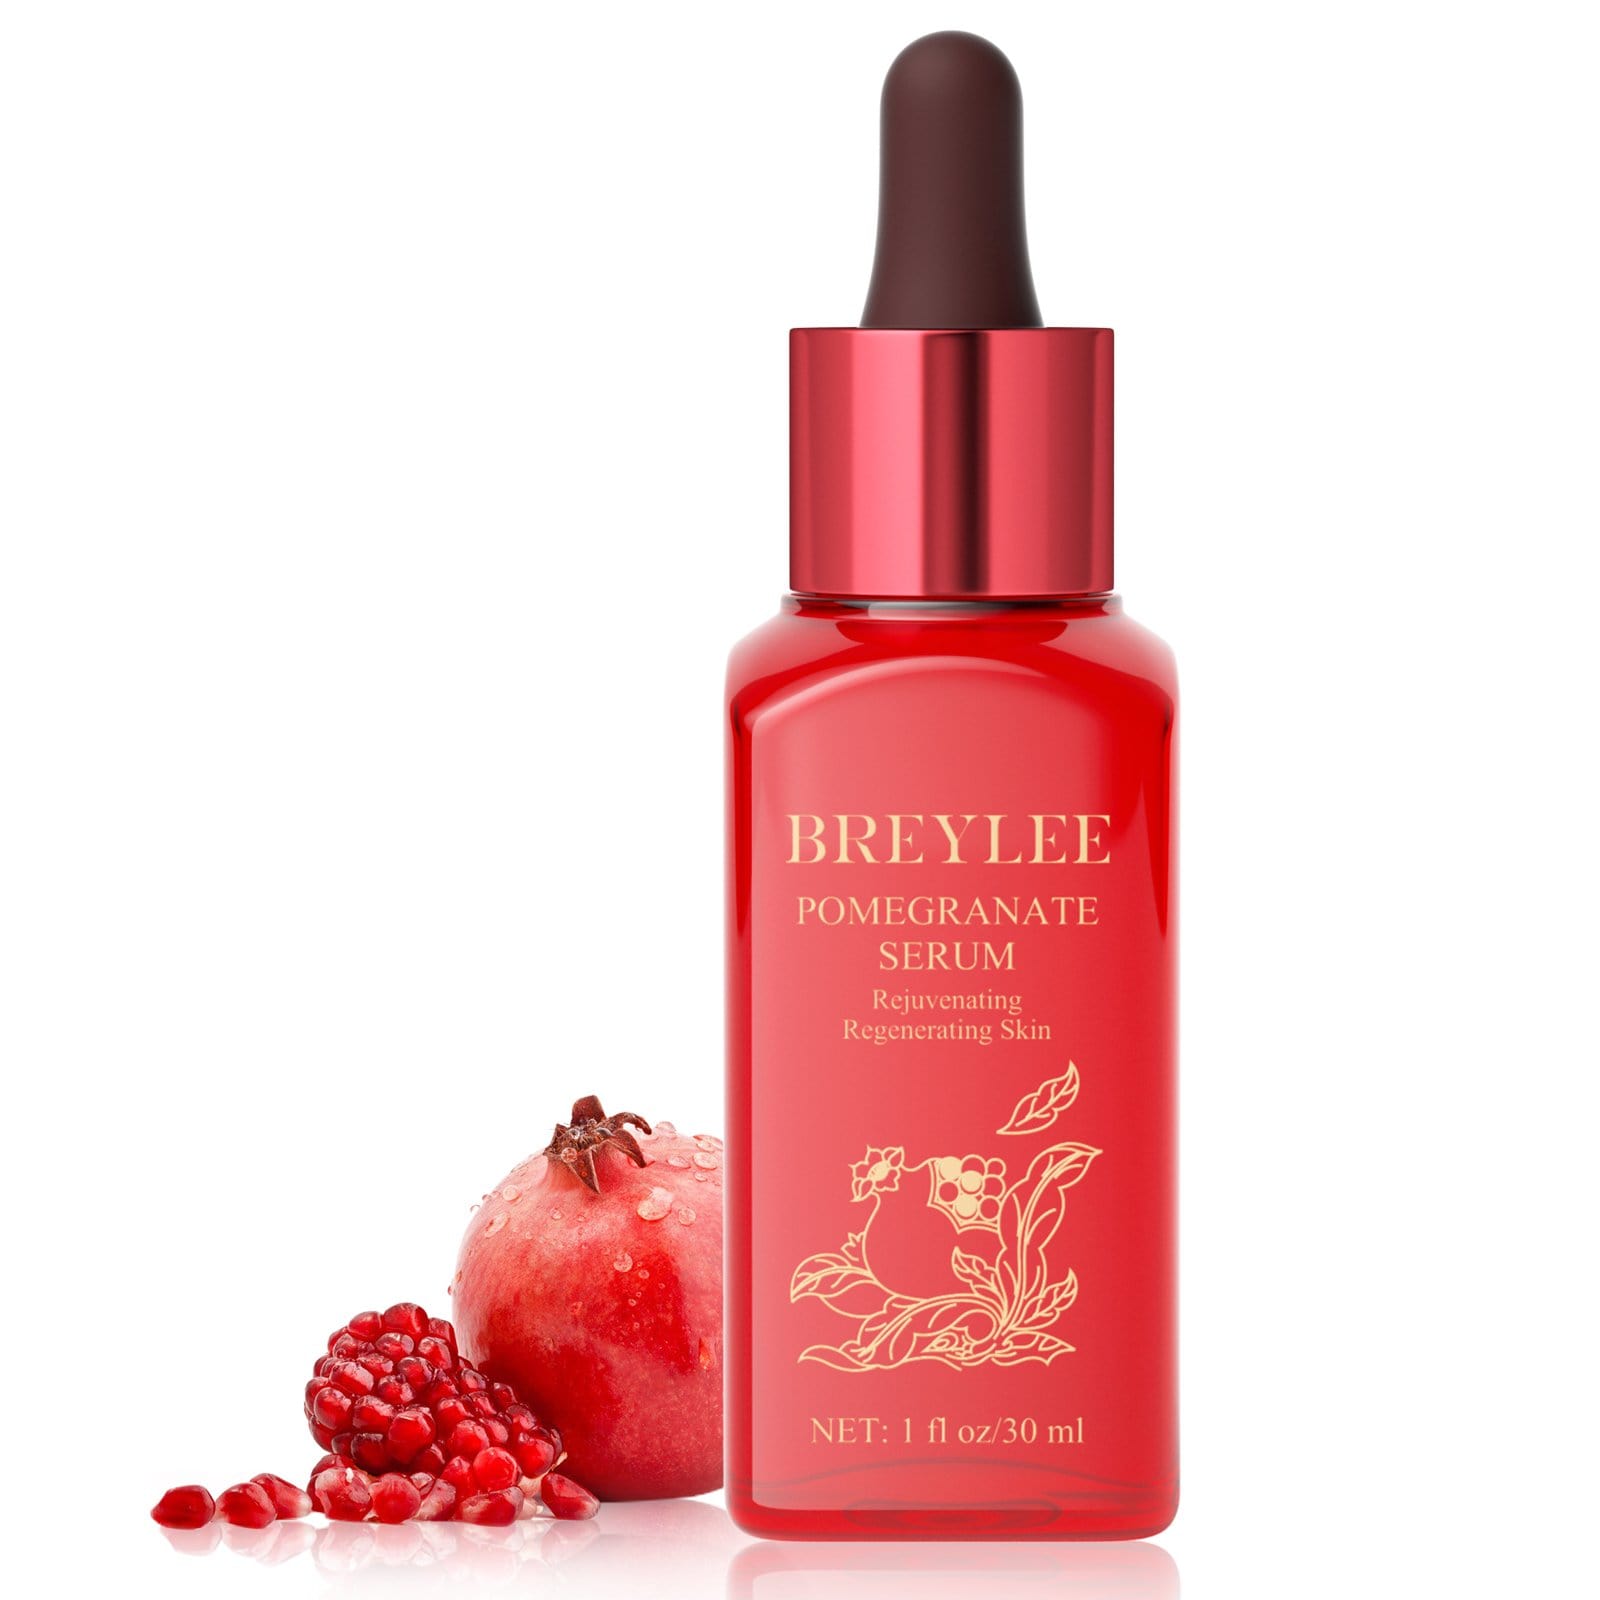 BREYLEE Pomegranate Serum - Whitening, Brighting & Repairing